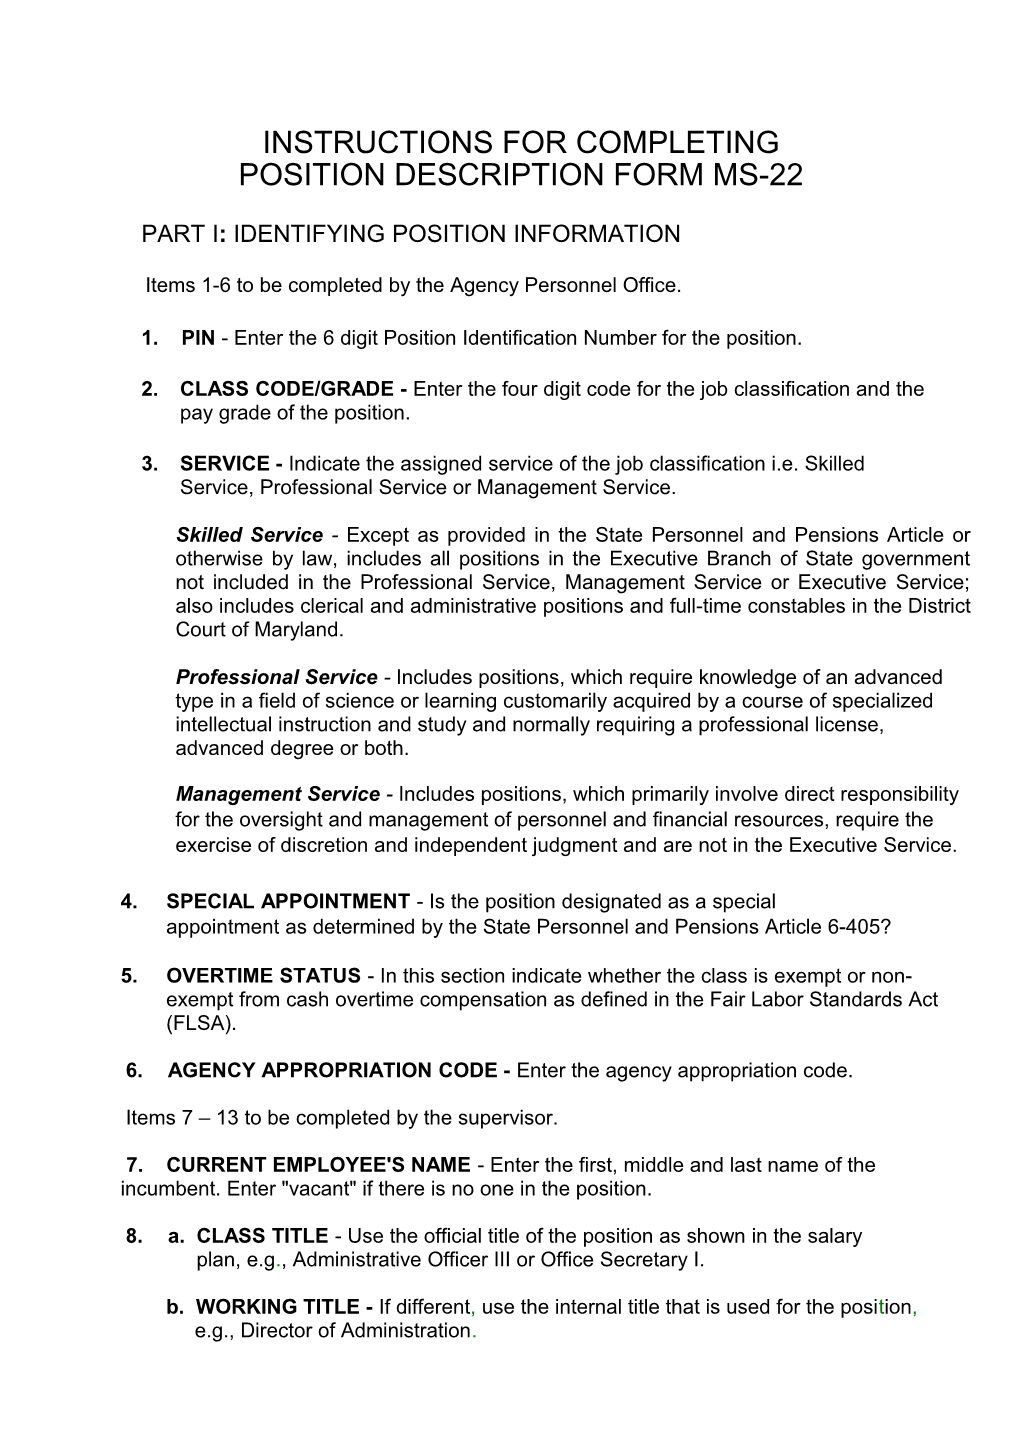 Position Description Form Instruction MS21